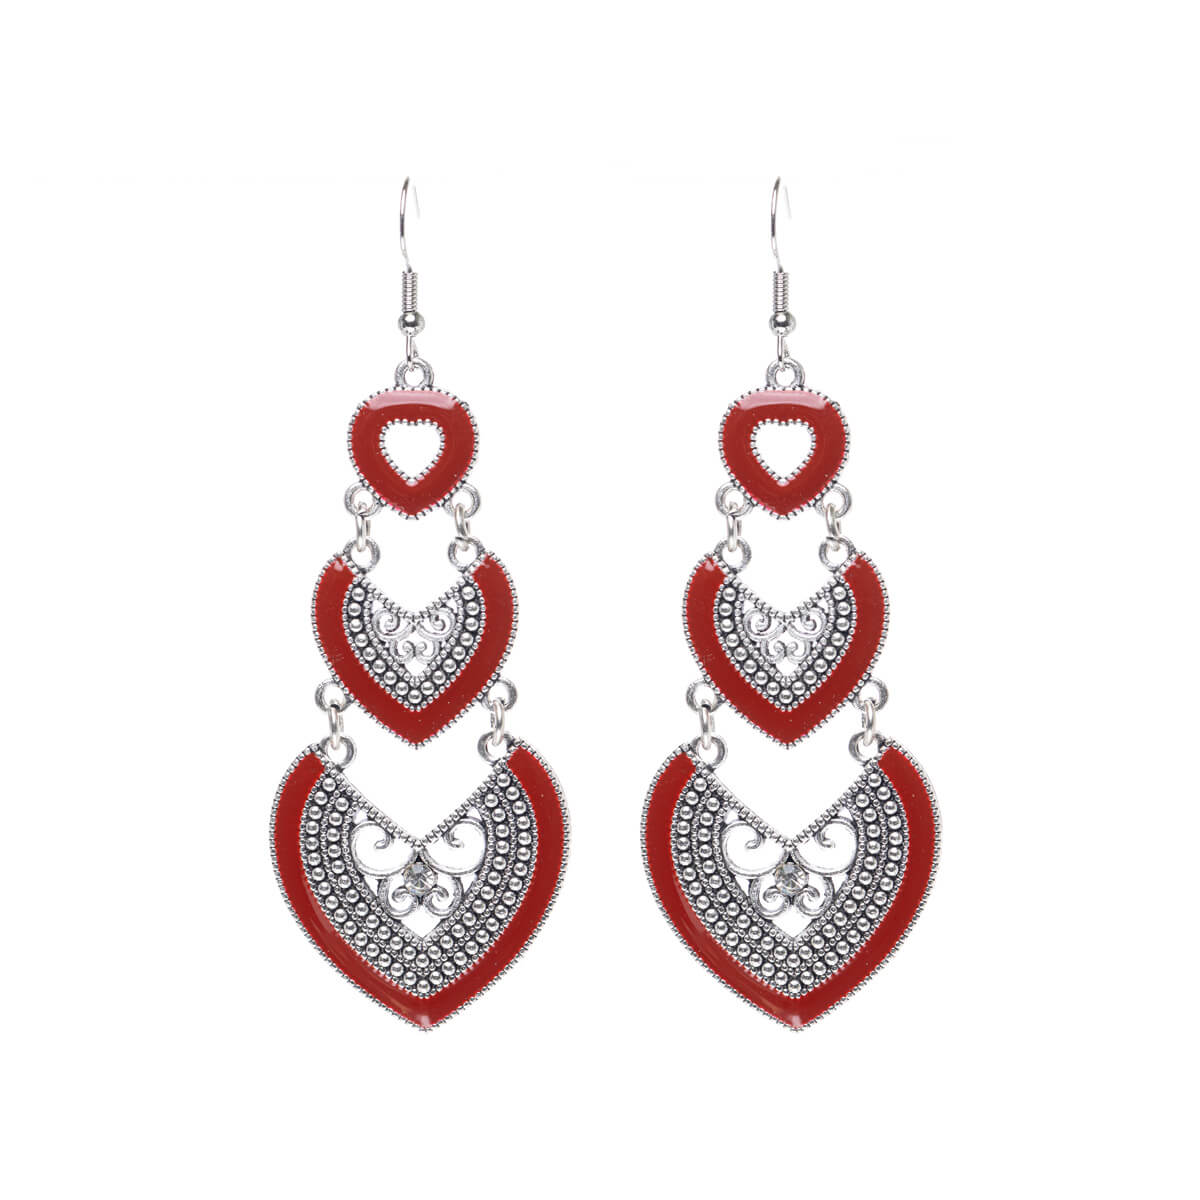 Long hanging heart earrings